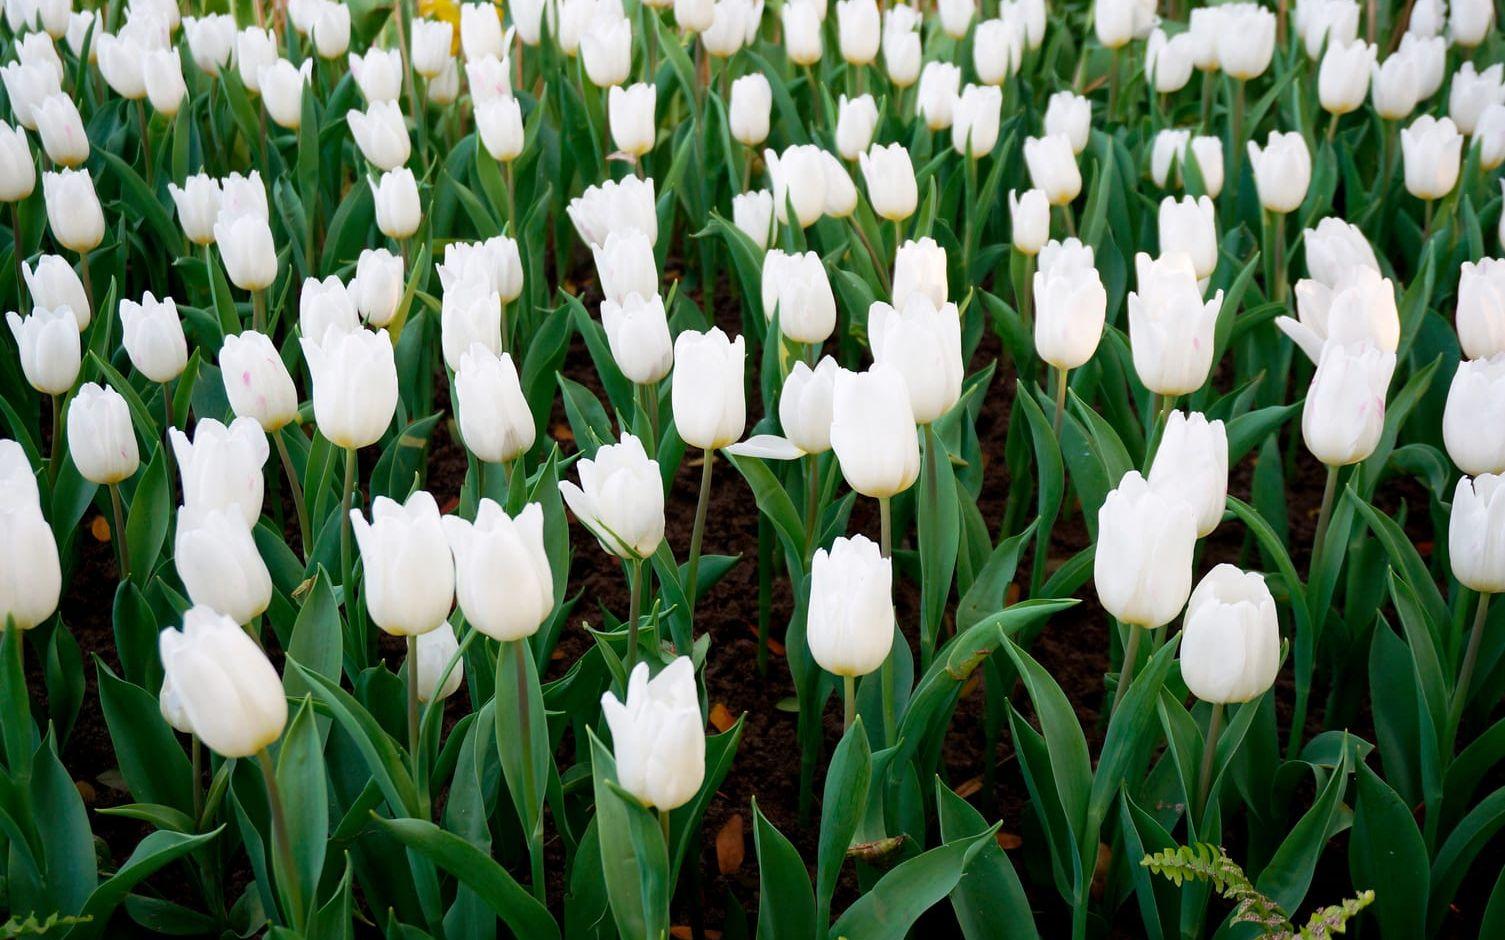 Krispigt vita tulpaner är vackra i alla rabatter - särskilt väl tillsammans med den skira vårgrönskan. Foto: Aria Pearlilla/Shutterstock.com